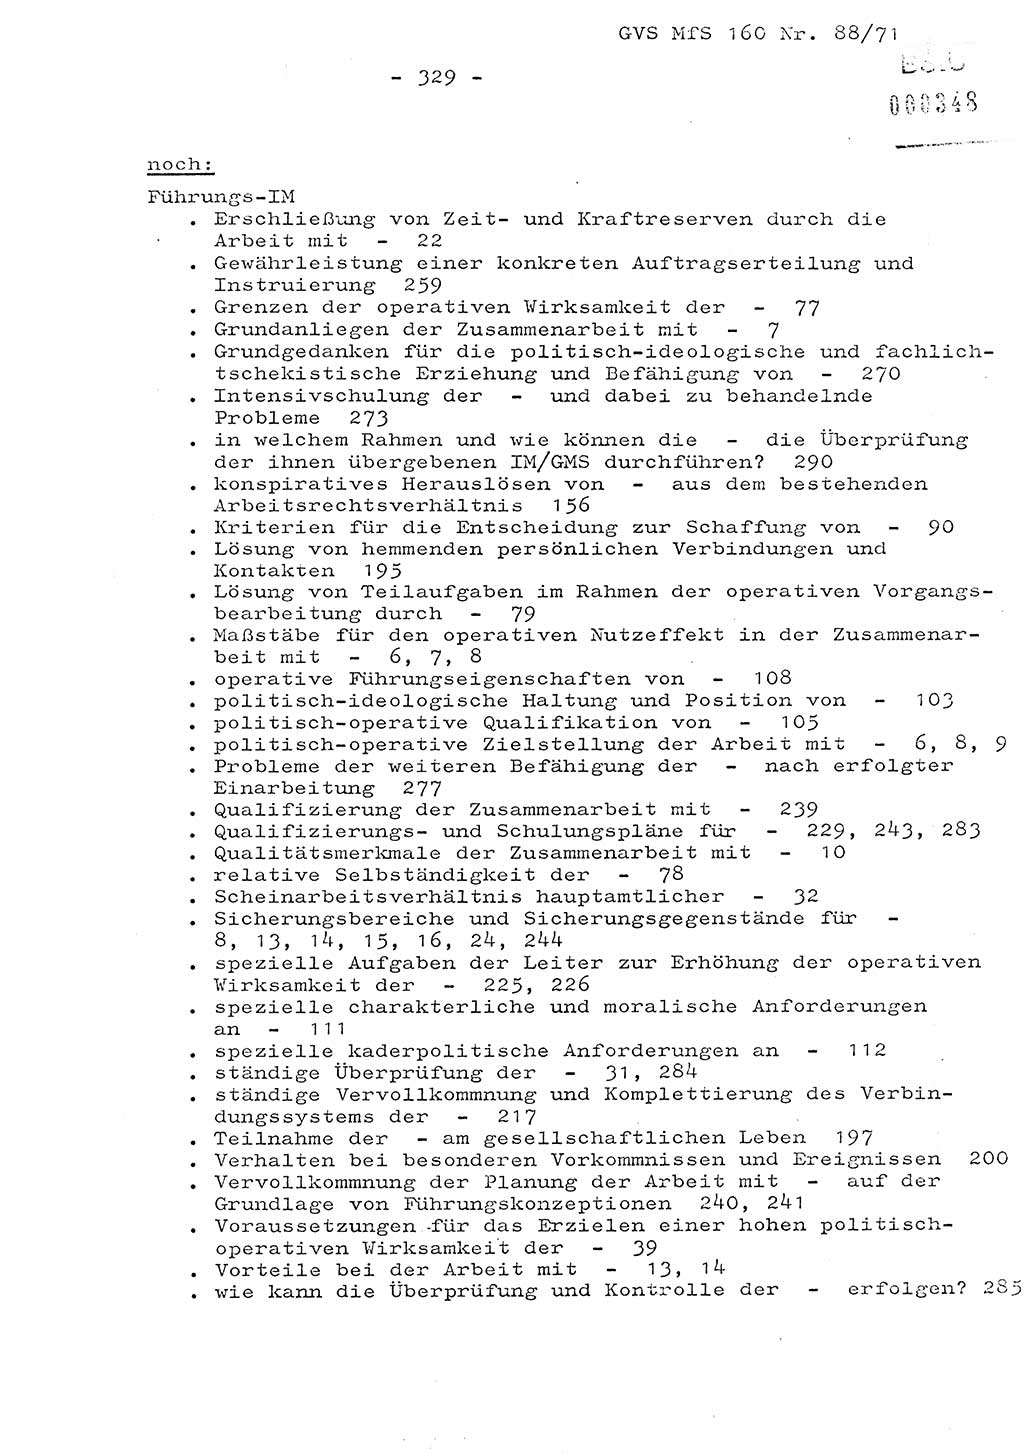 Dissertation Oberstleutnant Josef Schwarz (BV Schwerin), Major Fritz Amm (JHS), Hauptmann Peter Gräßler (JHS), Ministerium für Staatssicherheit (MfS) [Deutsche Demokratische Republik (DDR)], Juristische Hochschule (JHS), Geheime Verschlußsache (GVS) 160-88/71, Potsdam 1972, Seite 329 (Diss. MfS DDR JHS GVS 160-88/71 1972, S. 329)